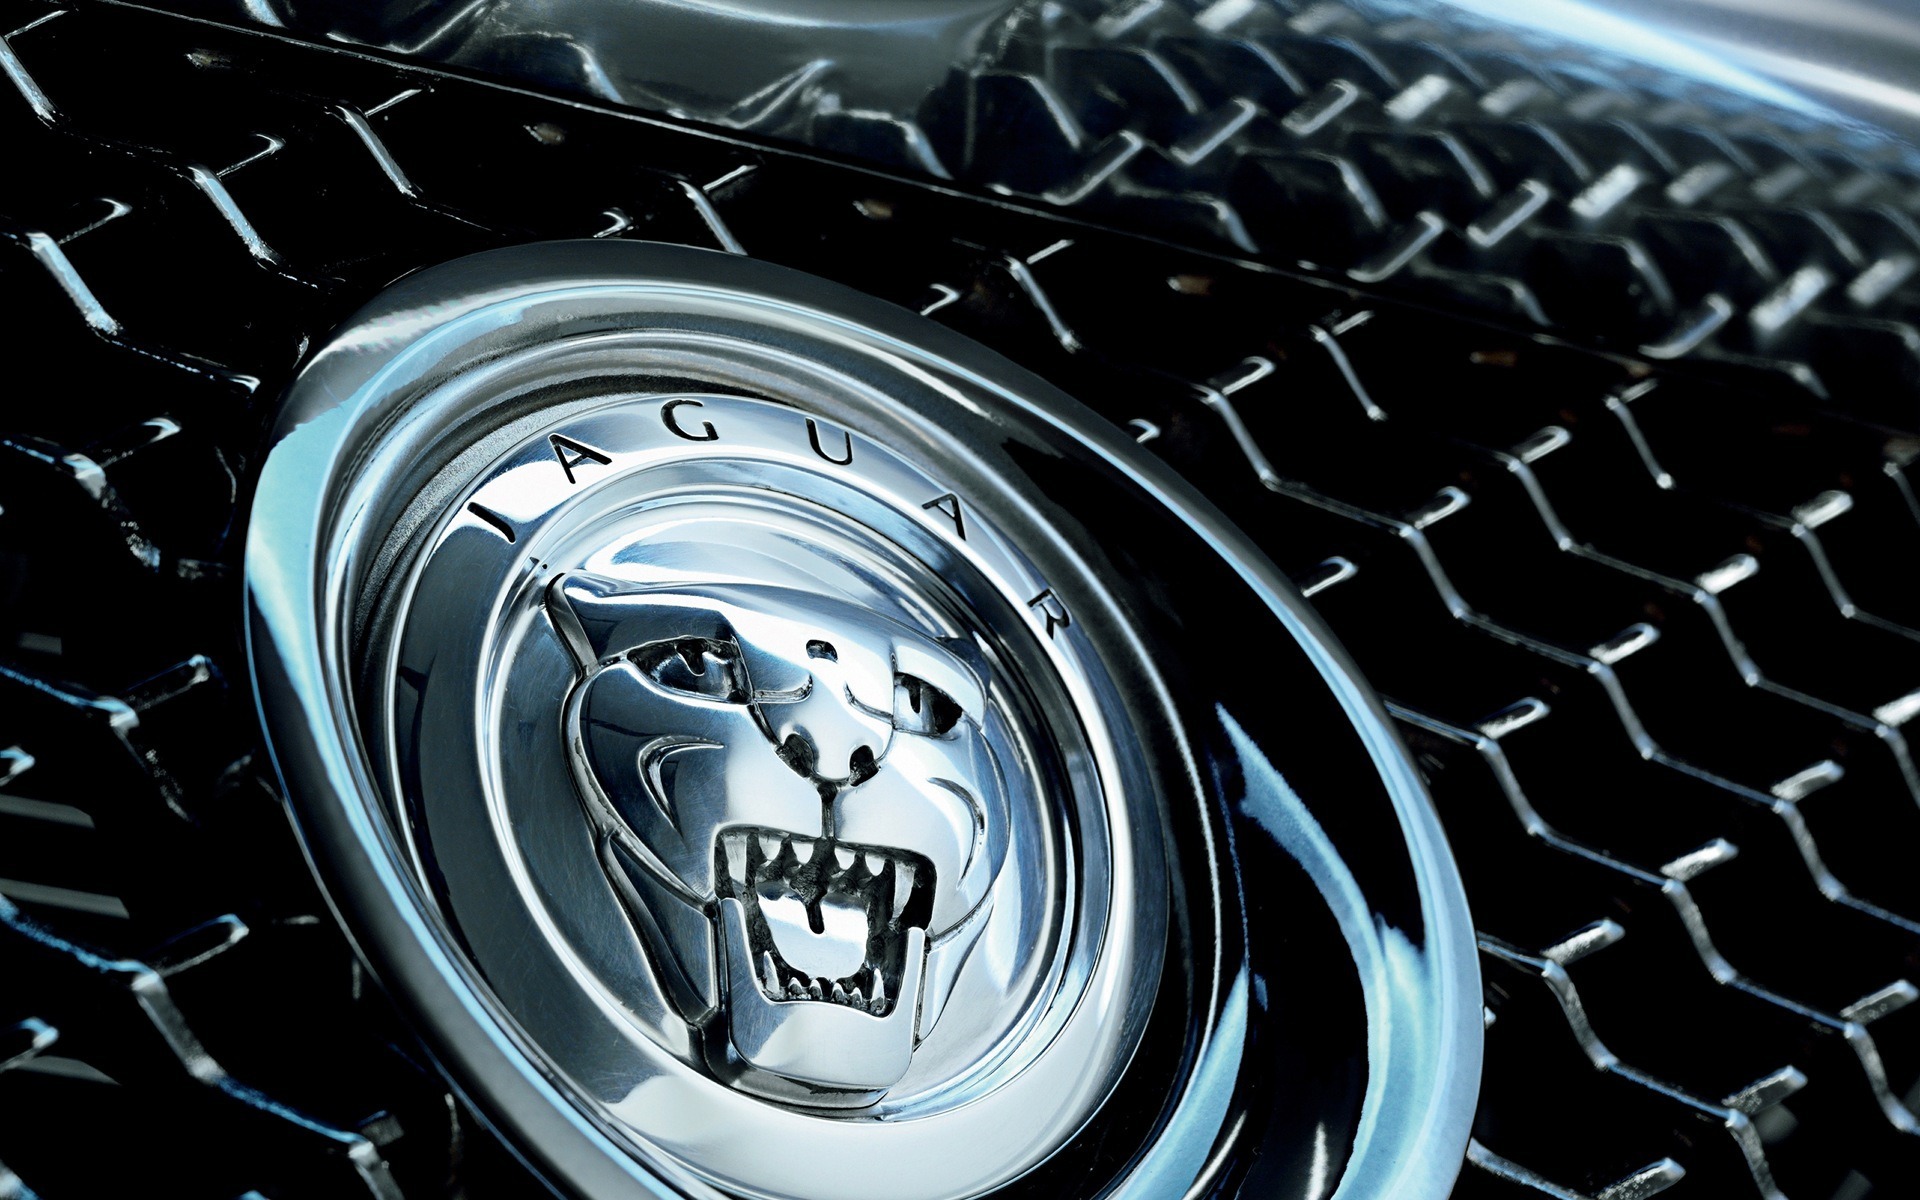 voitures jaguar fonds d'écran hd,véhicule à moteur,roue,jante,véhicule,l'eau